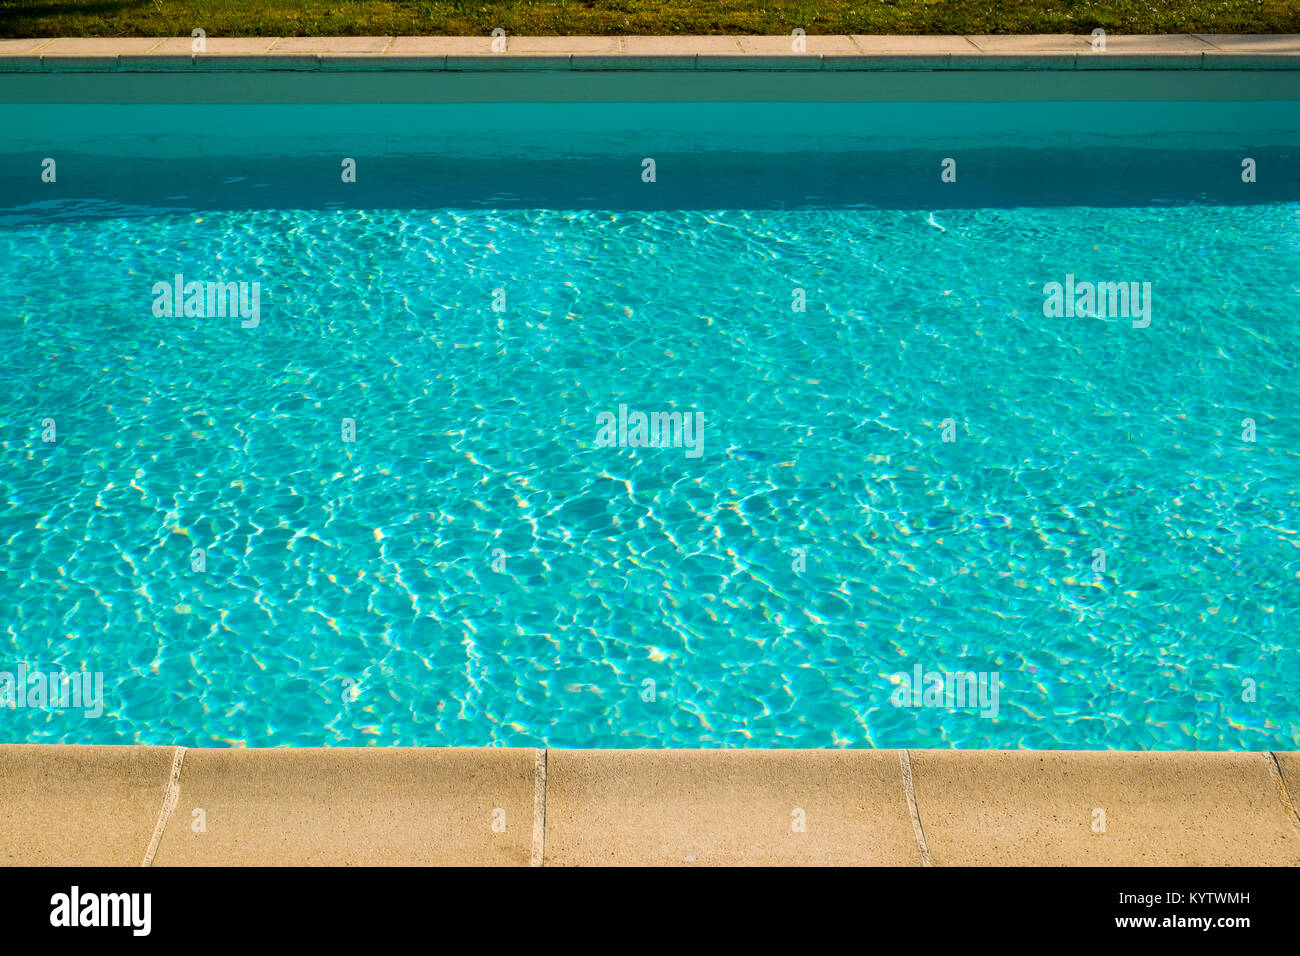 Testurizzato effetto di luce sulla superficie delle increspature di una piscina all'aperto Foto Stock